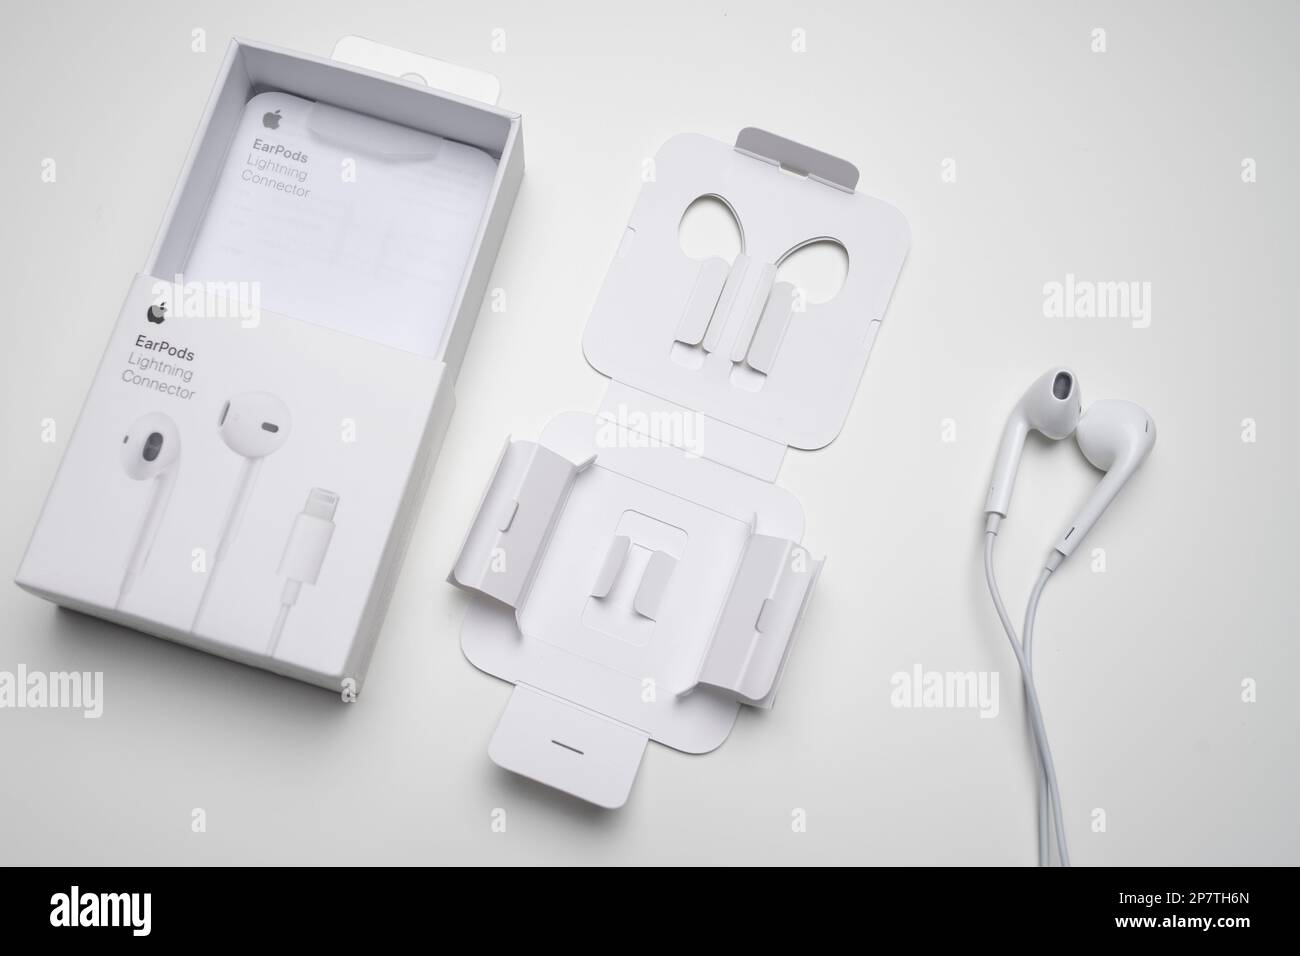 Nouveaux écouteurs Apple EarPods, Airpods, casques blancs pour écouter de  la musique et des podcasts dans un boîtier ouvert. Isolé sur fond blanc.  Budapest, Hongrie - Fér Photo Stock - Alamy